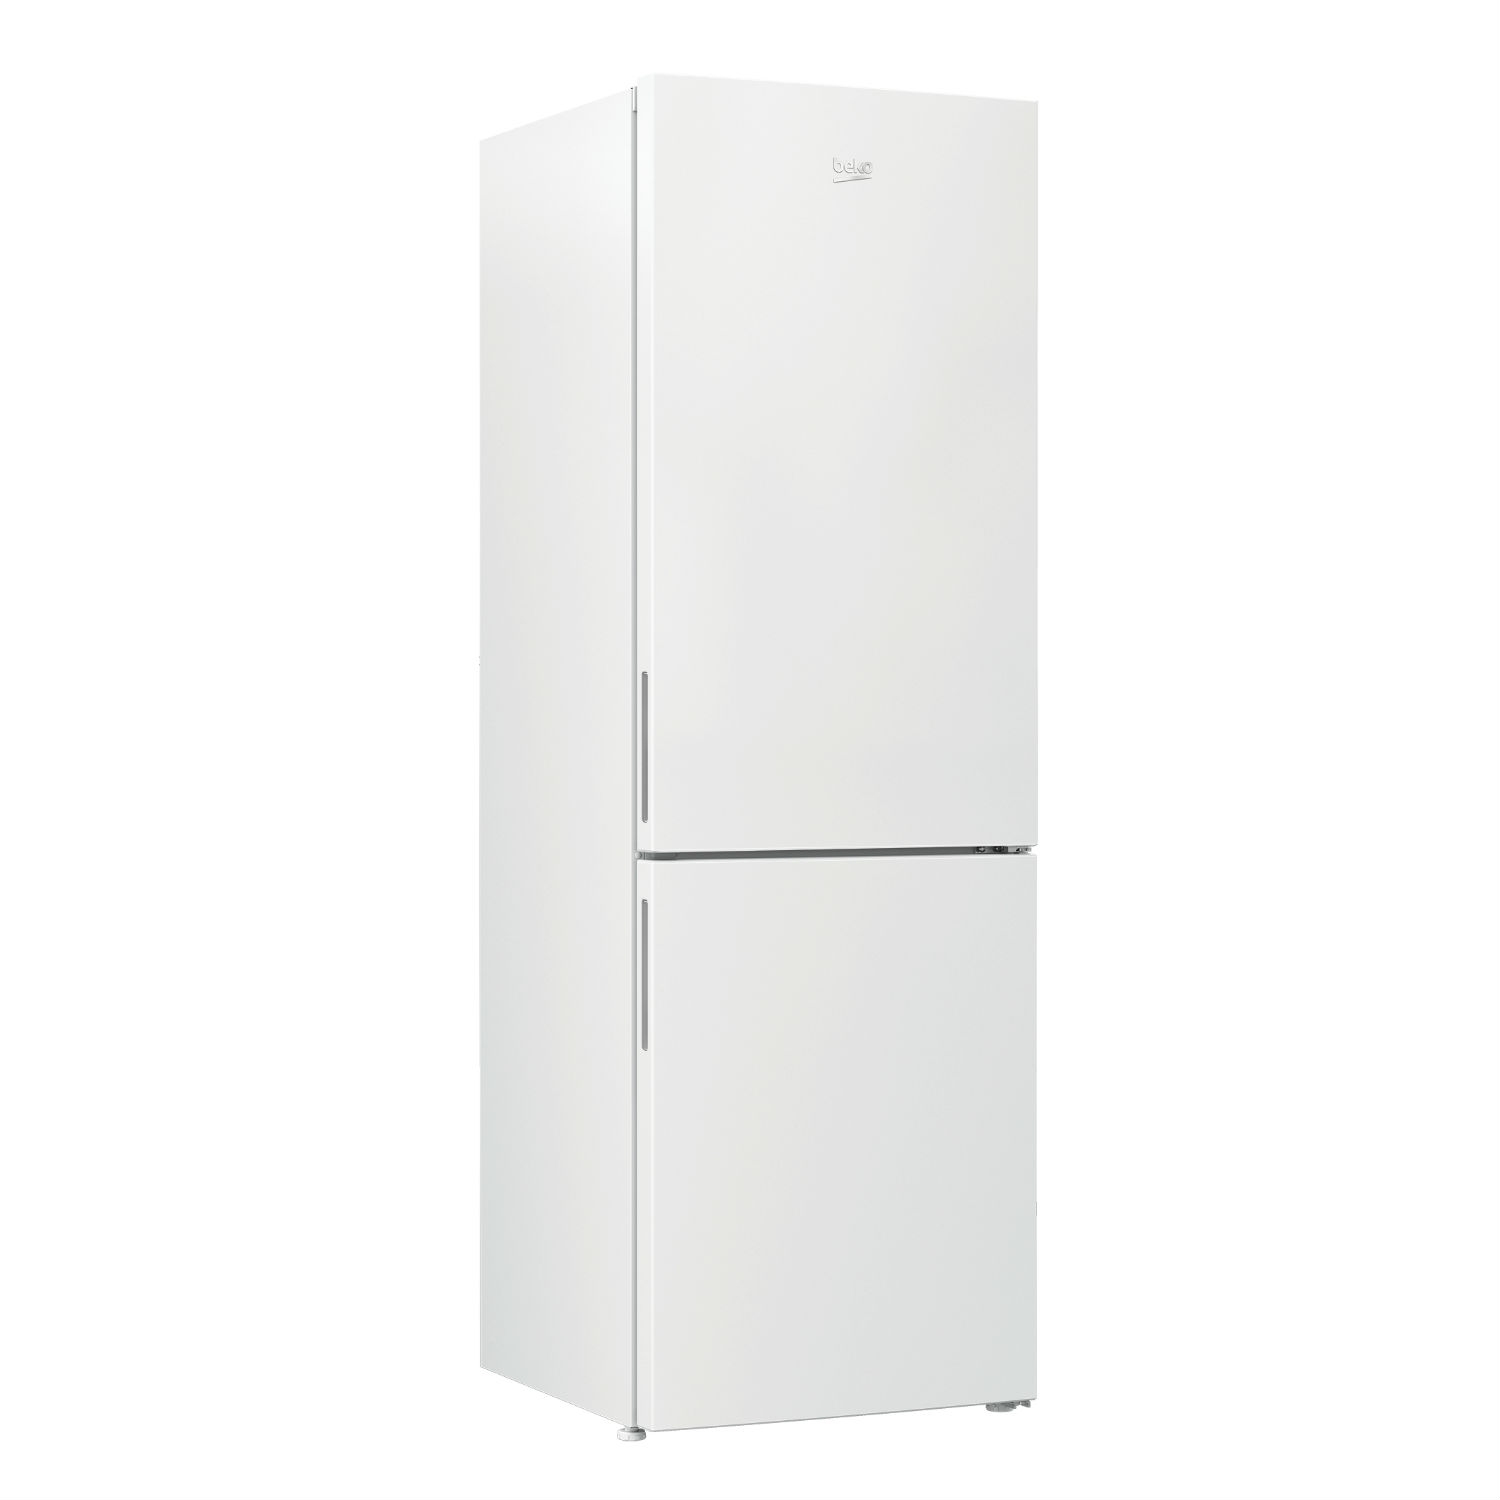 Beko CCFH1685W 60cm Fridge Freezer - White - Frost Free - 1